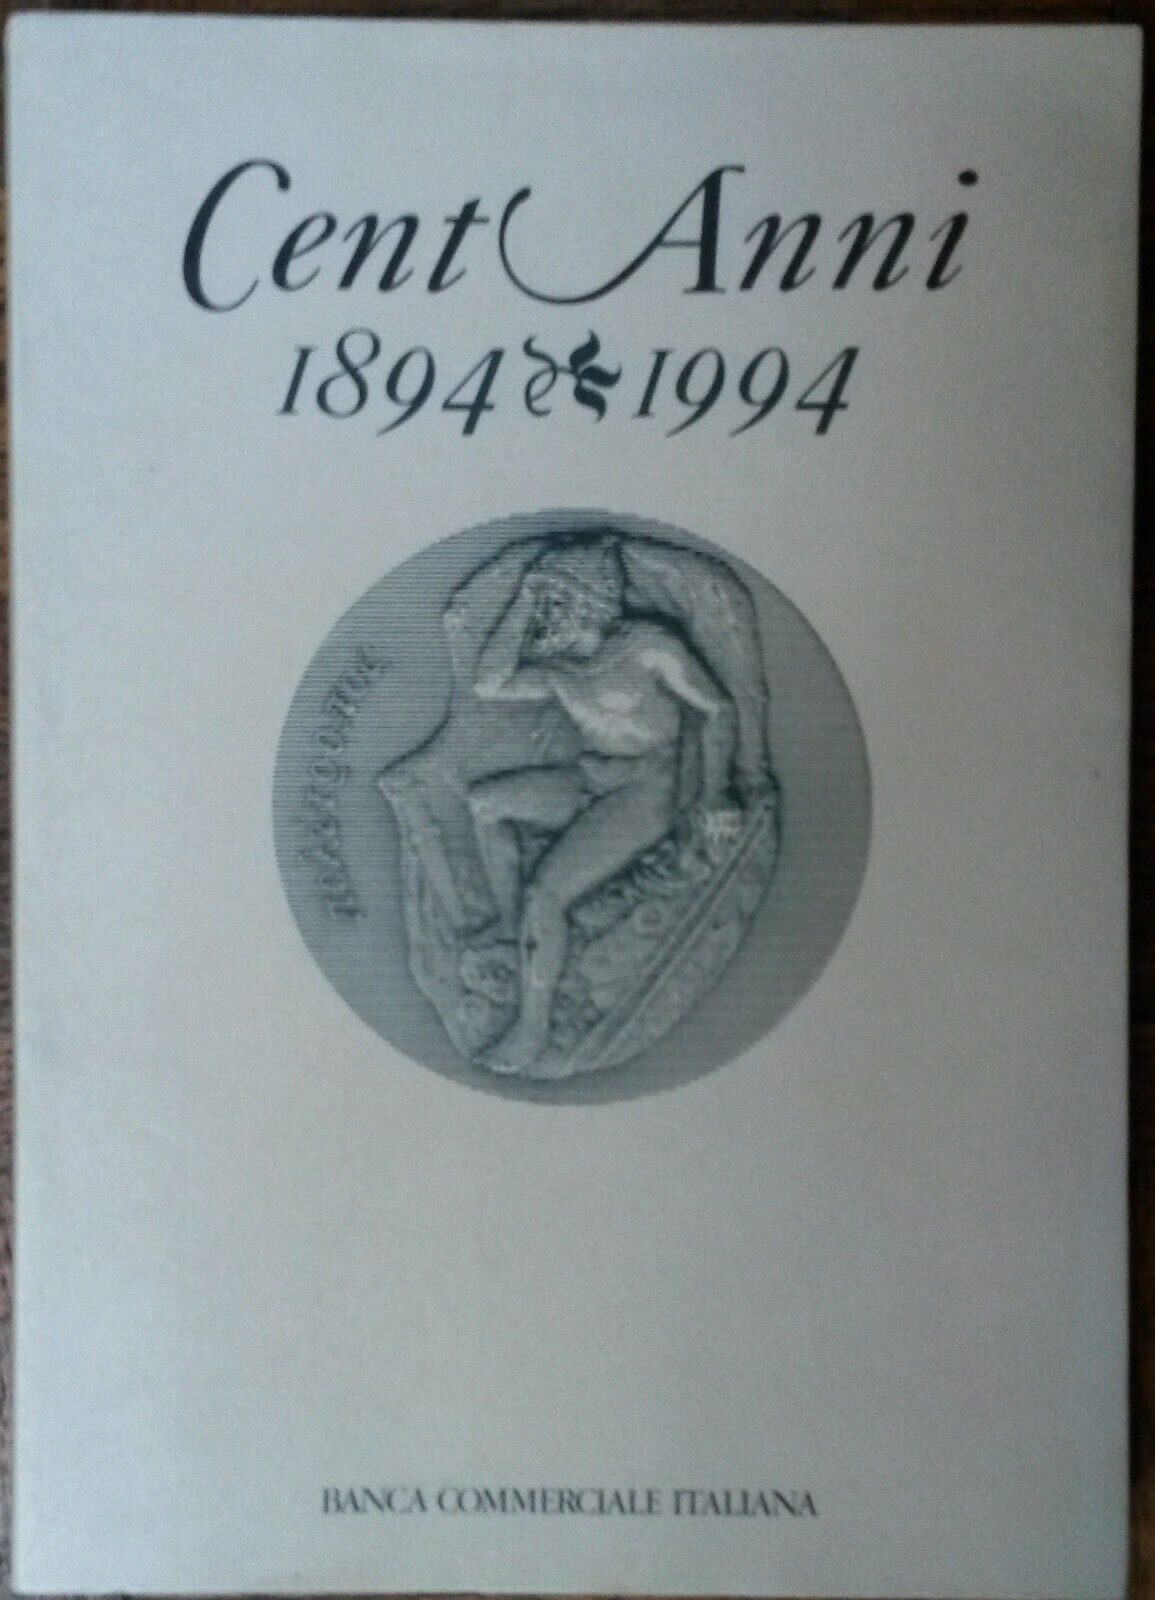 Cent?anni,1894-1994 - Gianni Toniolo - Banca Commerciale Italiana,1994 - R